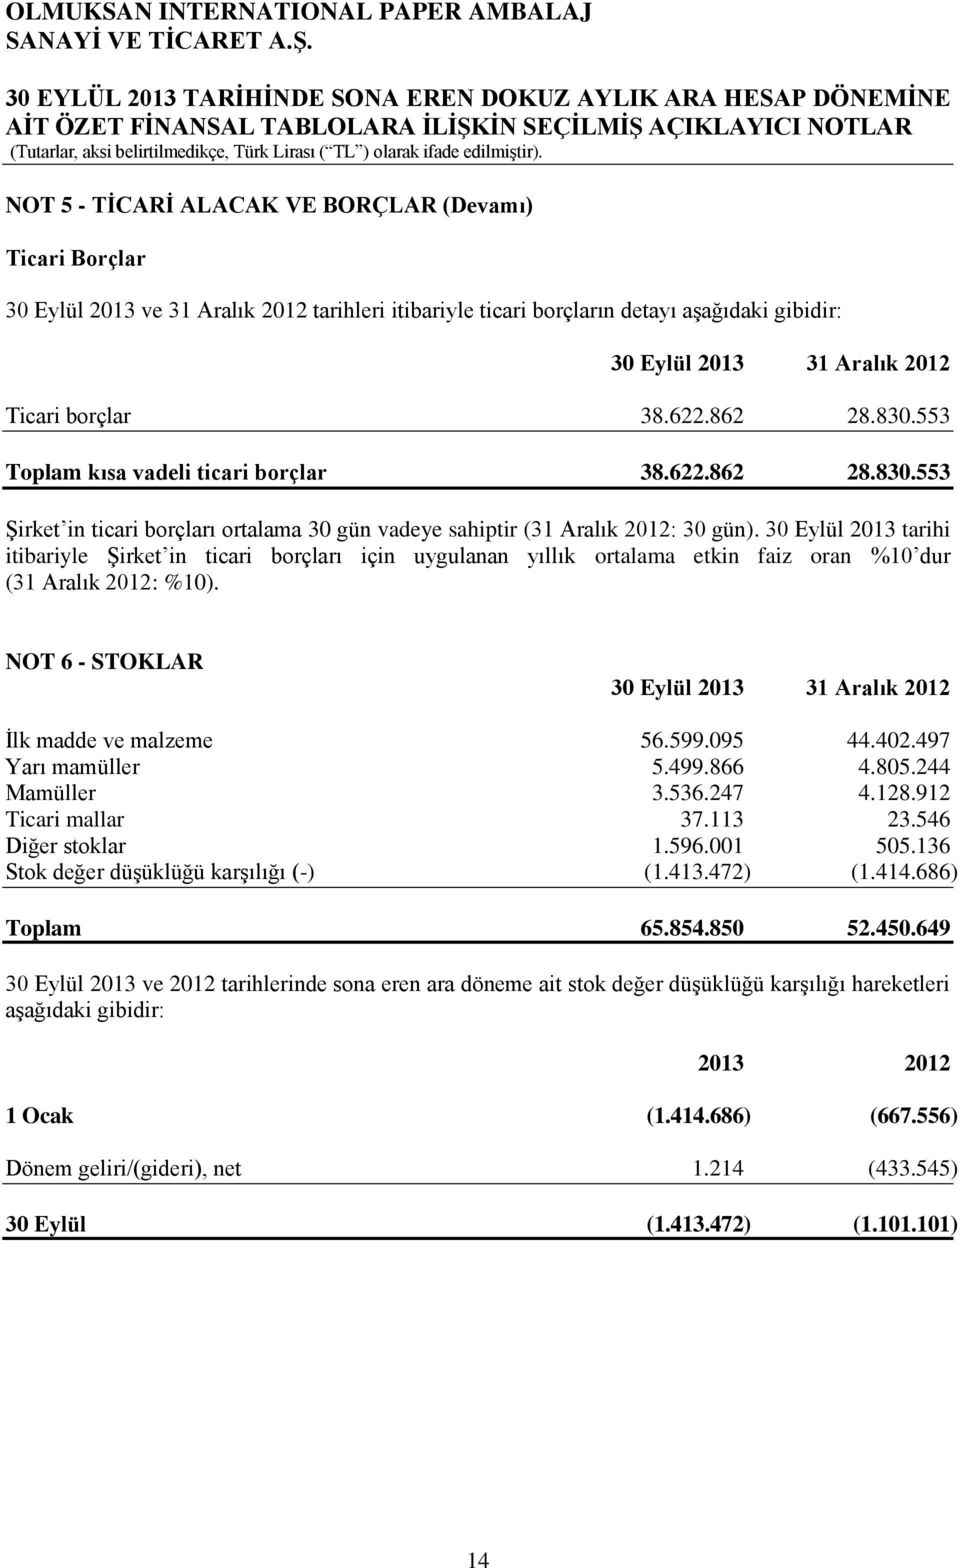 30 Eylül 2013 tarihi itibariyle ġirket in ticari borçları için uygulanan yıllık ortalama etkin faiz oran %10 dur (31 Aralık 2012: %10). NOT 6 STOKLAR Ġlk madde ve malzeme 56.599.095 44.402.